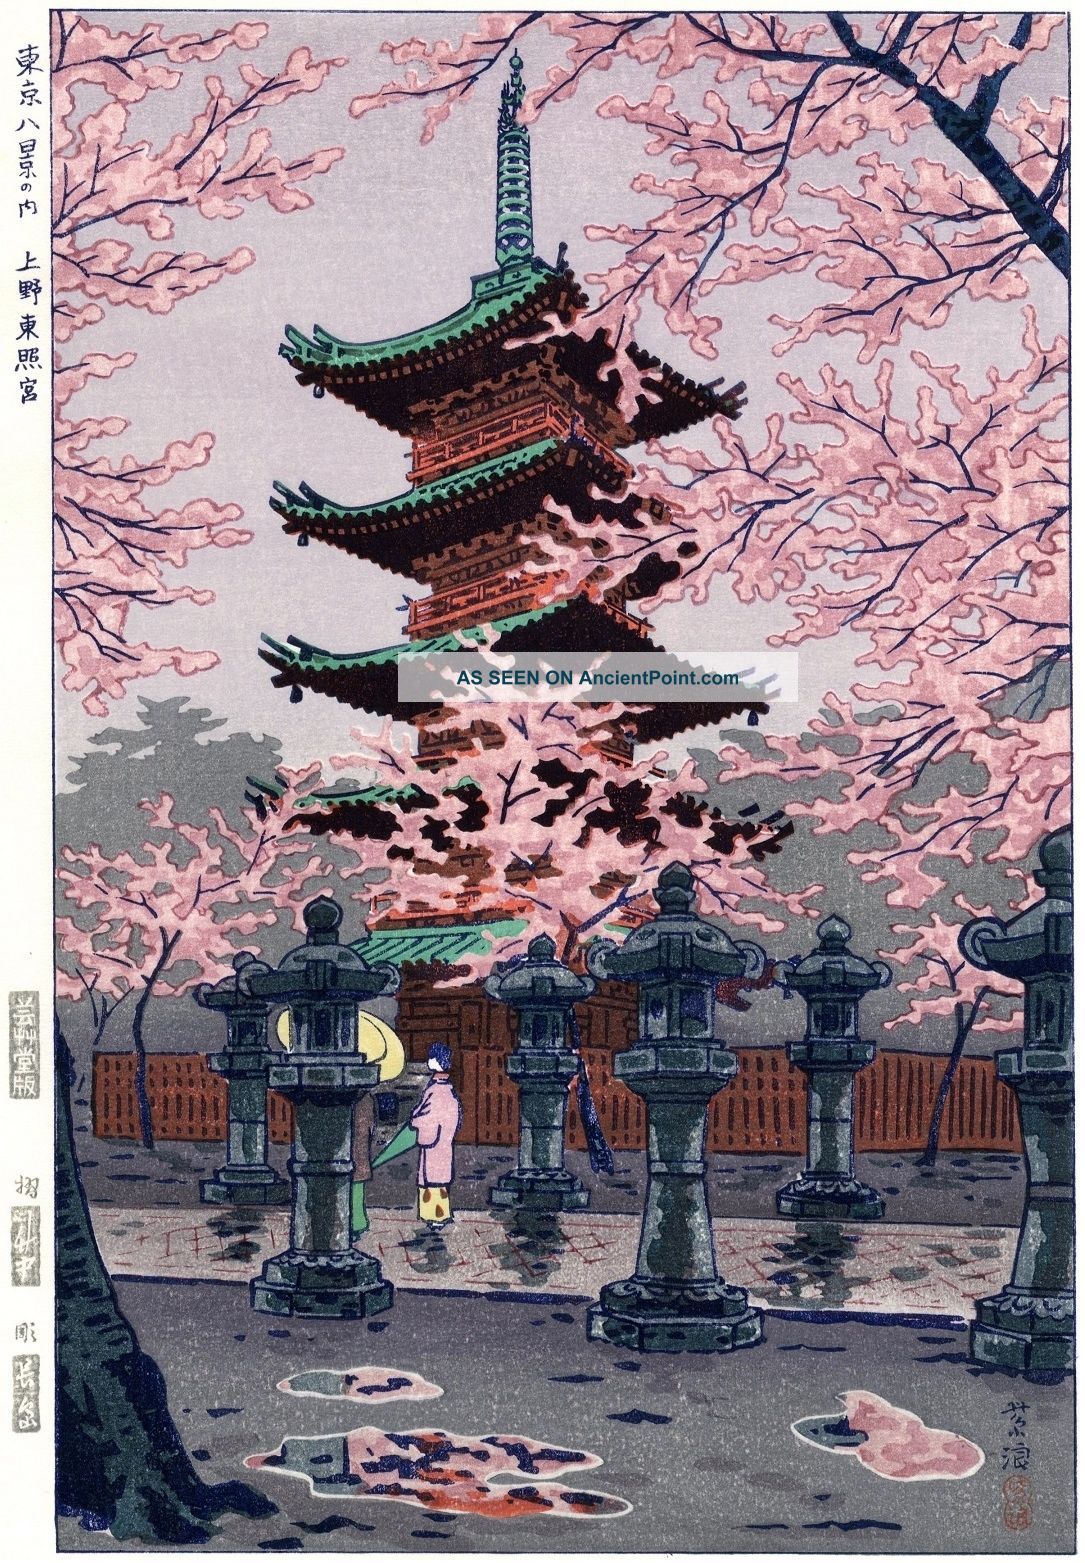 Kasamatsu Shiro Japanese Woodblock Print Shin Hanga - Ueno Toshogu Prints photo